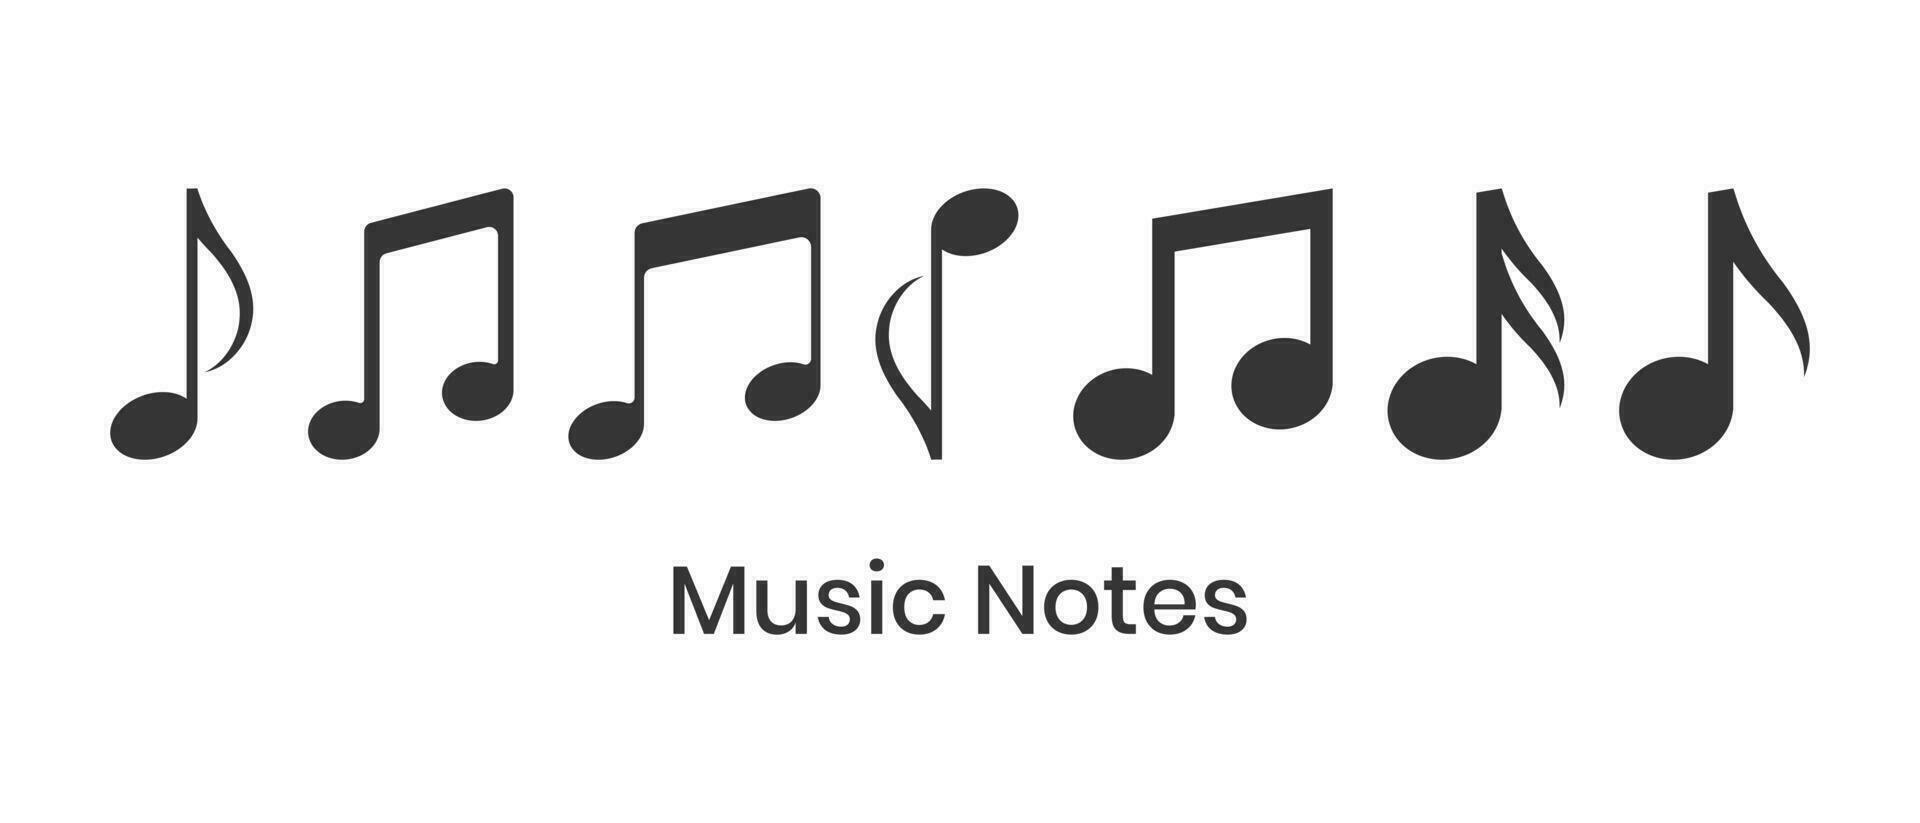 musik anteckningar ikoner vektor i trendig platt stil, musikalisk anteckningar vektor illustration, melodi, ställa in, rytm, opera, lyrisk tecken, sammansättning, sladdar, design element, tona musikalisk anteckningar på vit bakgrund